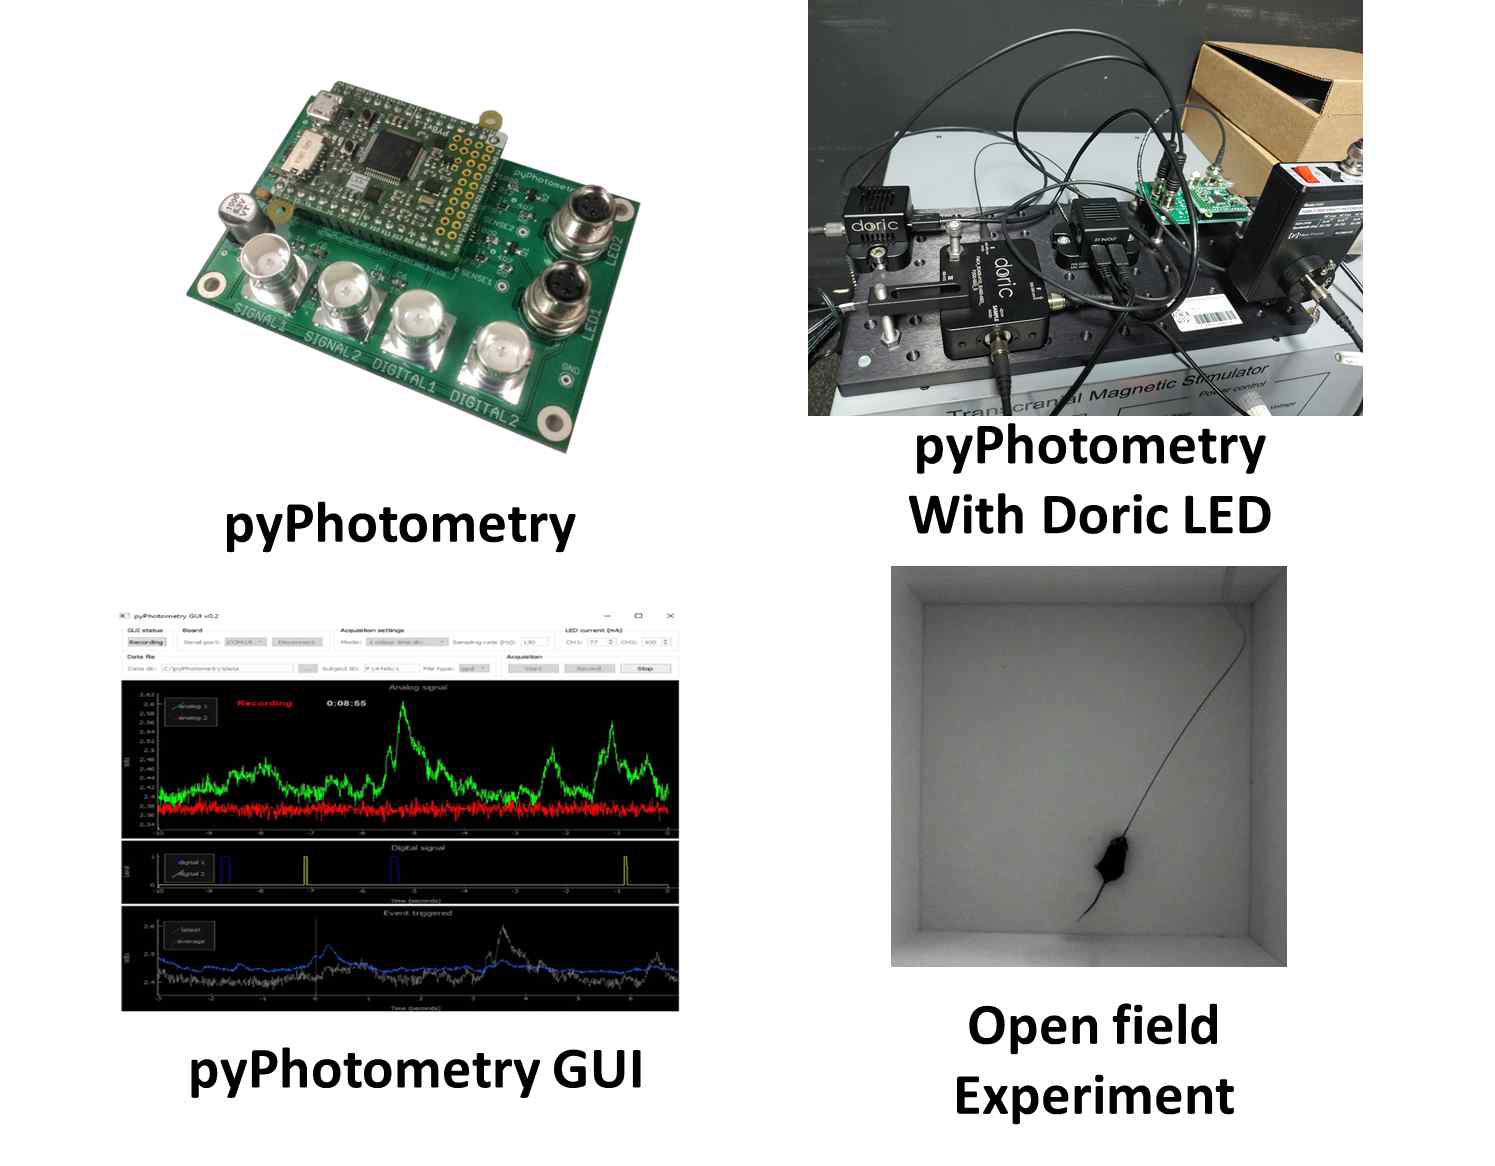 광섬유 광도측정 및 행동측정을 위한 시스템 및 실험환경